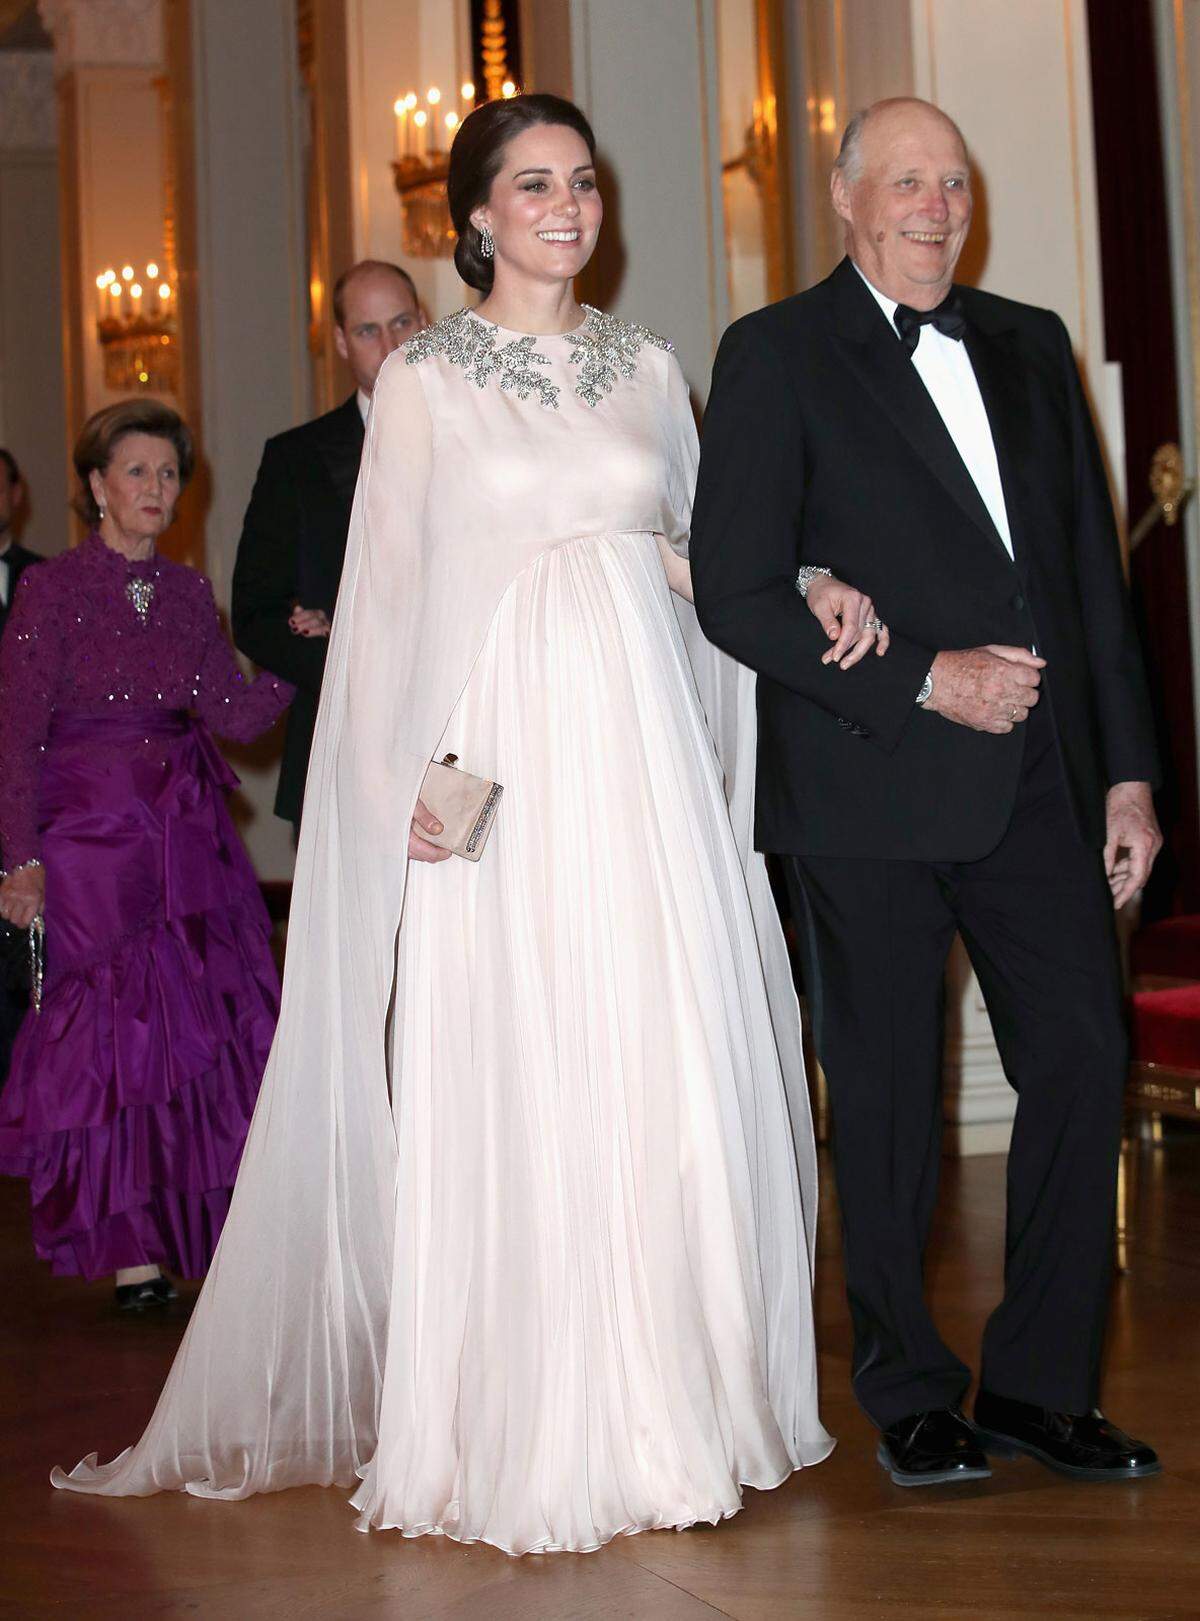 Deutlichen Applaus gab es für dieses große Kleid von Alexander McQueen, mit dem die Herzogin bei einer Gala im norwegischen Königspalast allen die Show stahl.